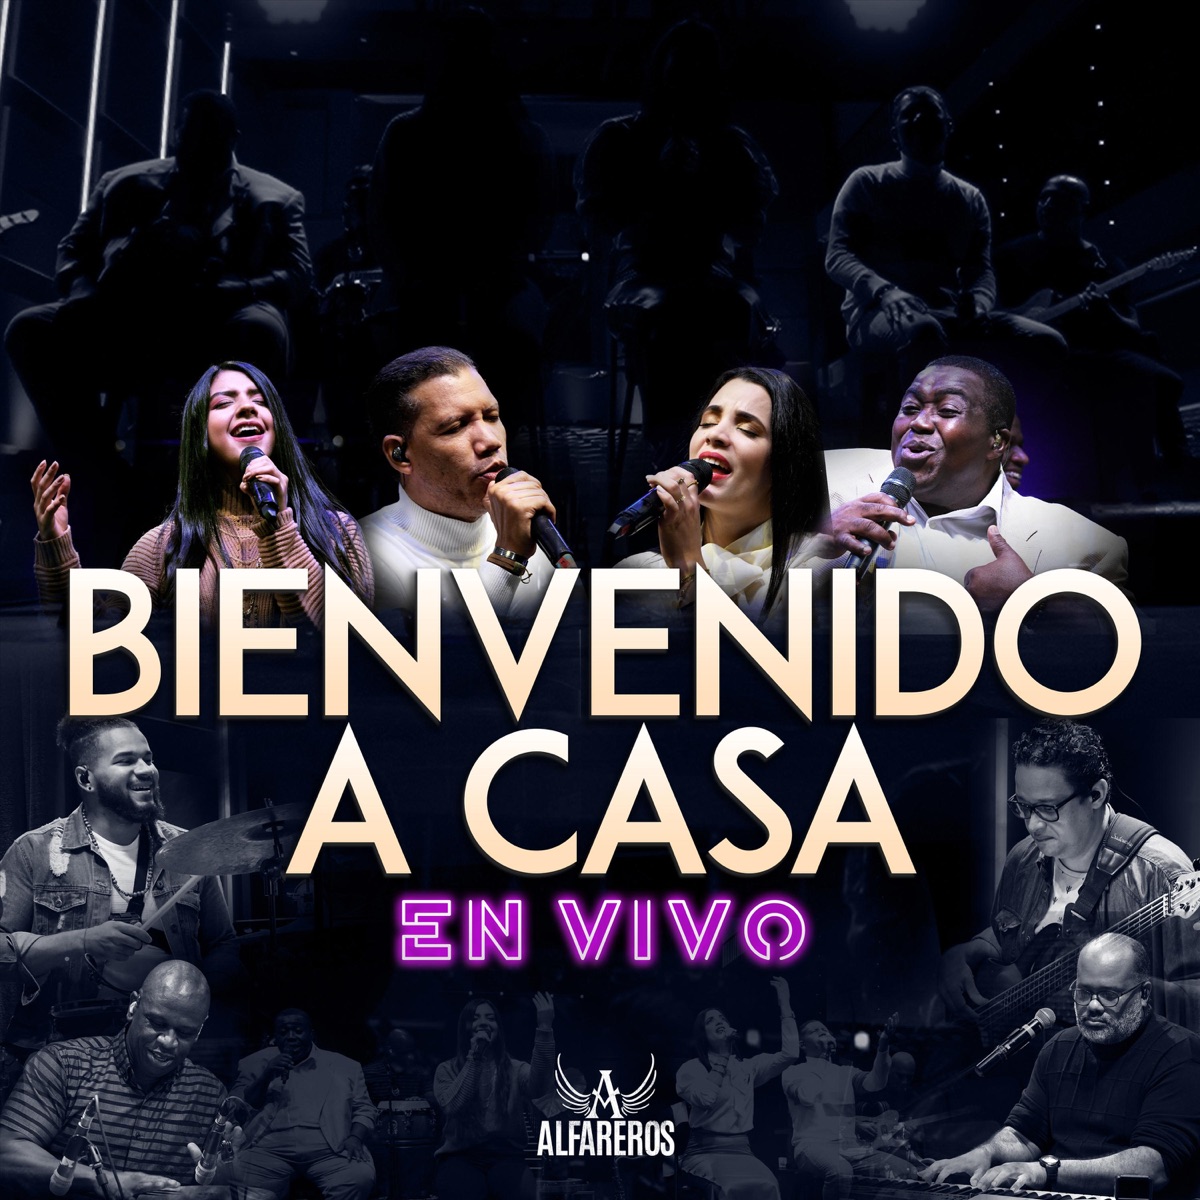 Bienvenido a Casa (En Vivo) - Album by Alfareros - Apple Music